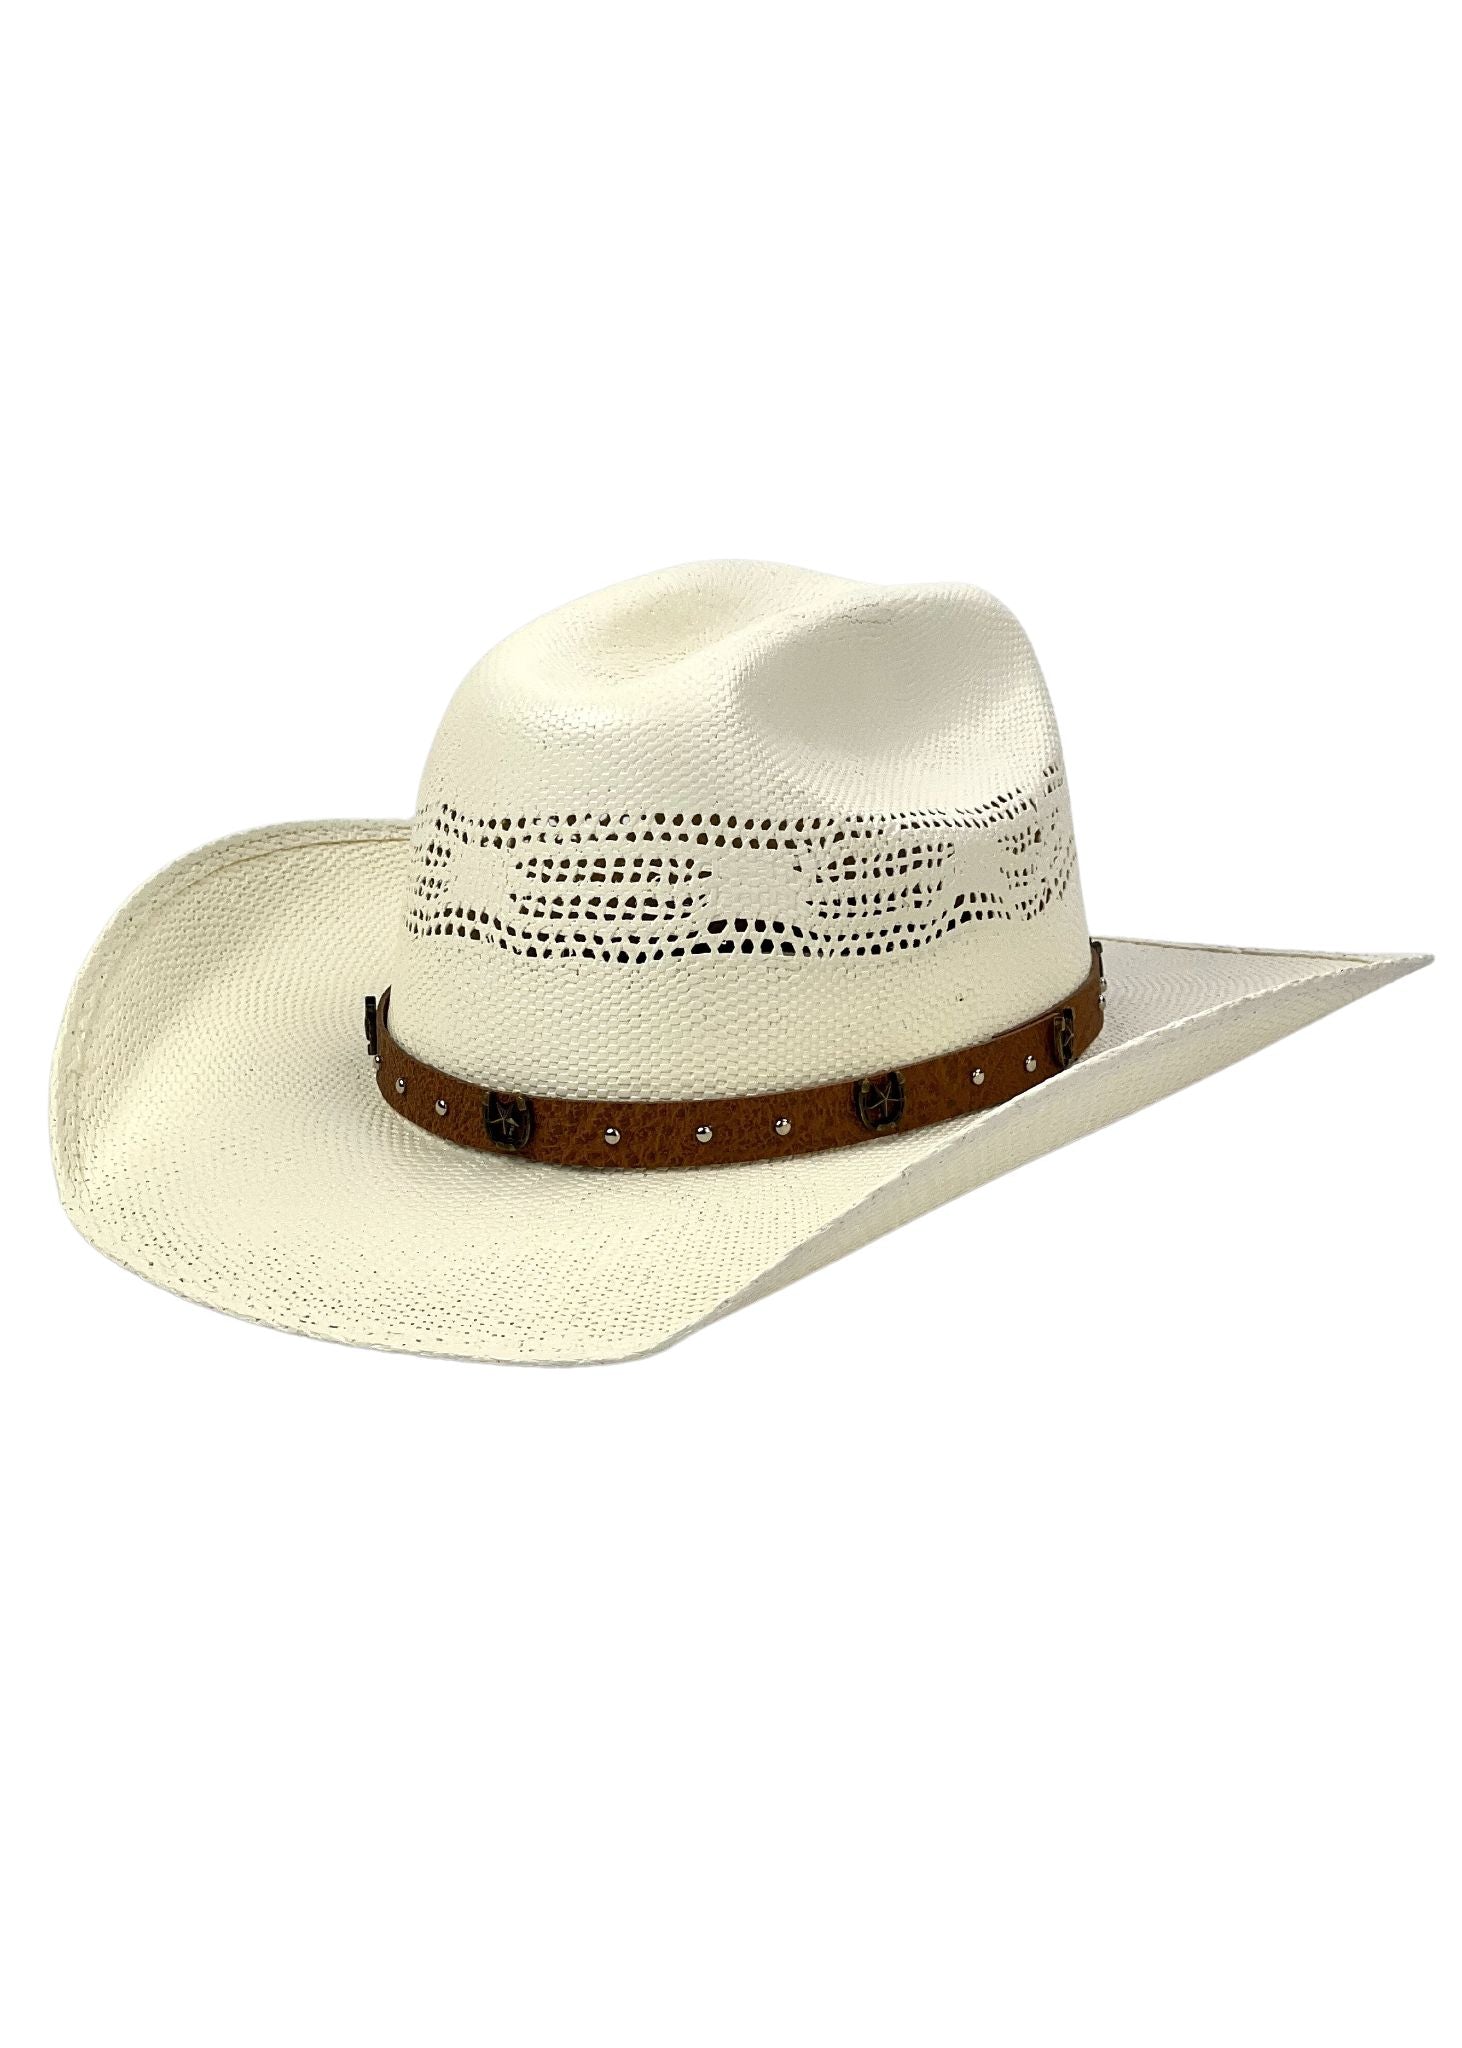 cappello western in paglia lil'hazer per bambino